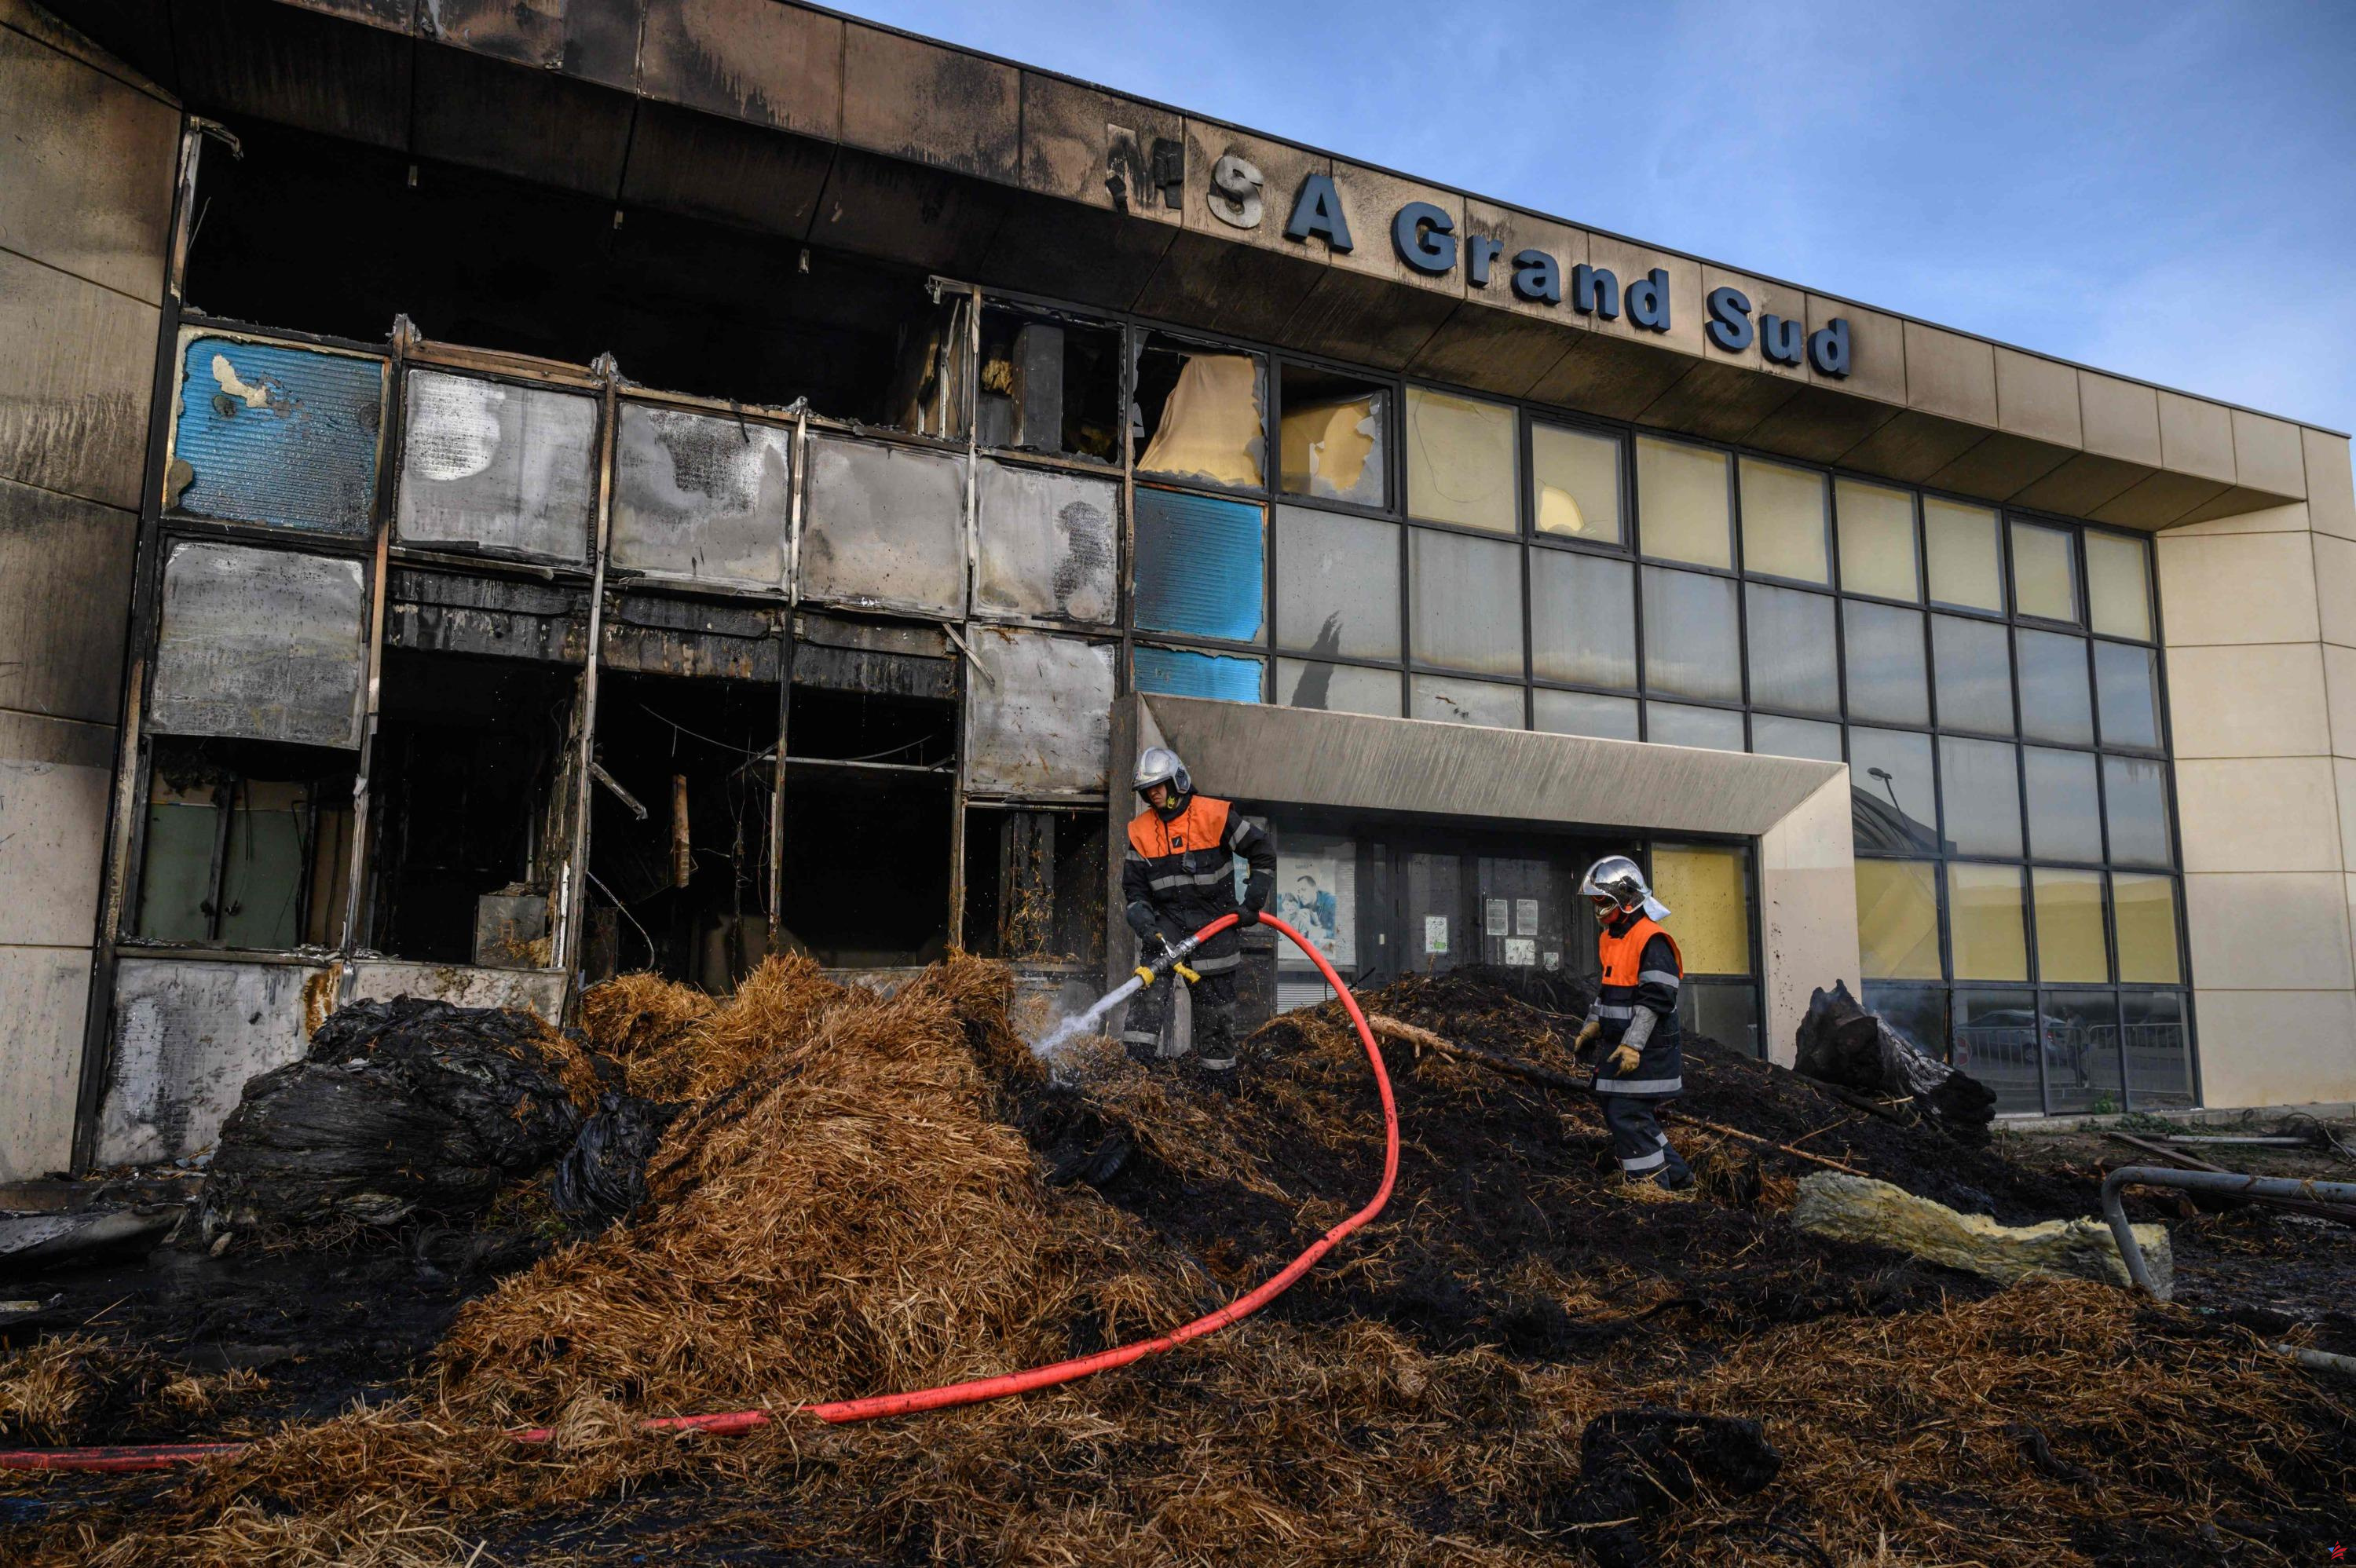 Agricultores enojados: lo que sabemos sobre el incendio en un edificio de la Mutualité sociale agricole en Narbona